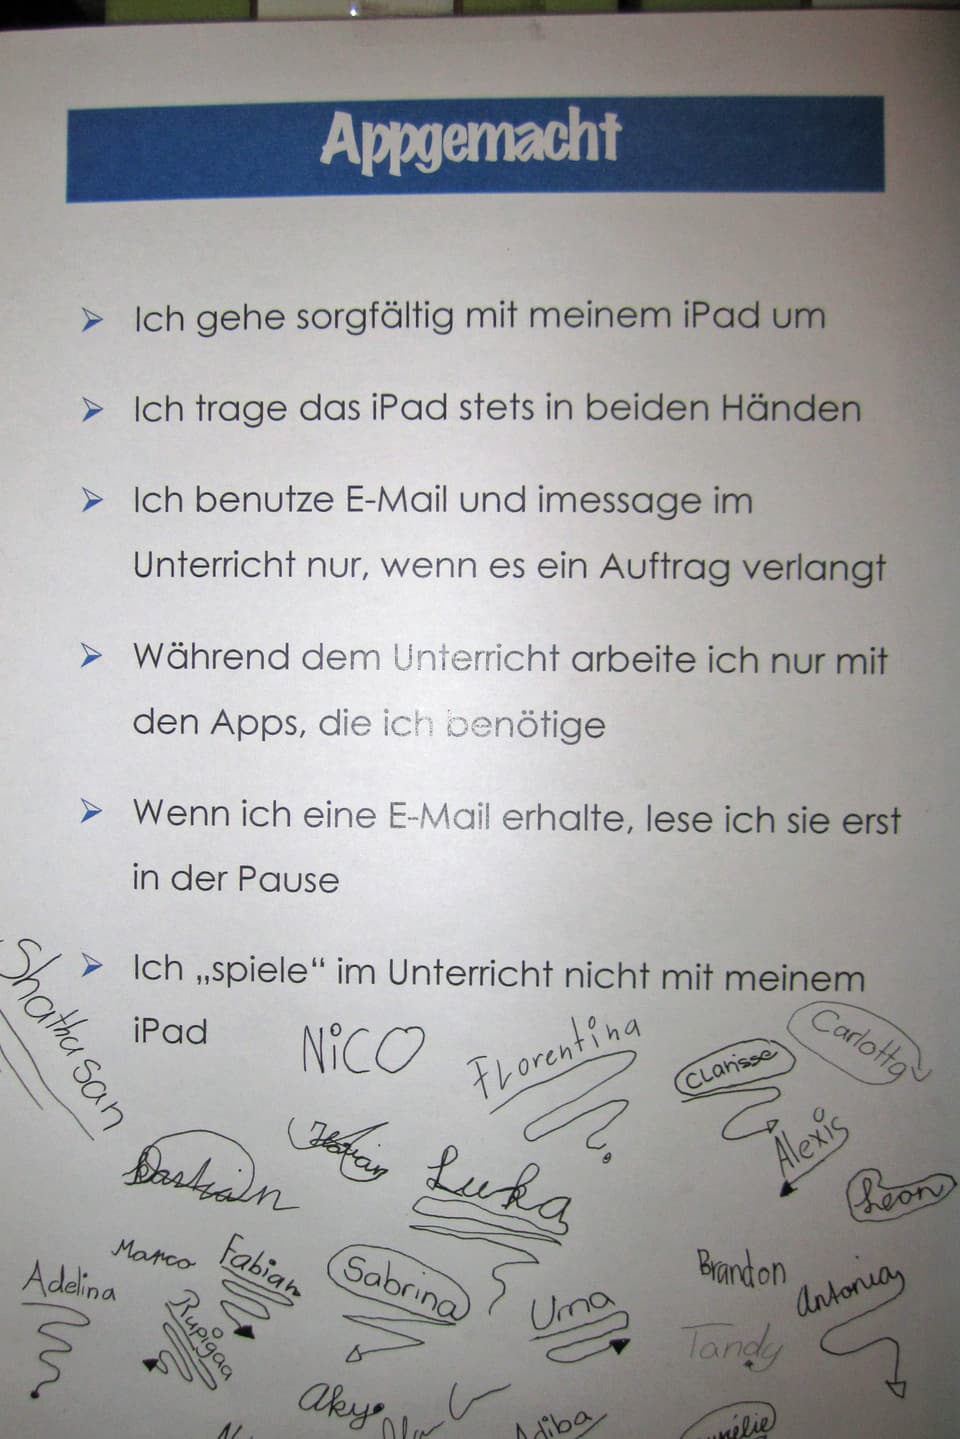 Ein Blatt mit fünf Regeln für den Umgang mit dem iPad, darunter die Unterschriften der Kinder.